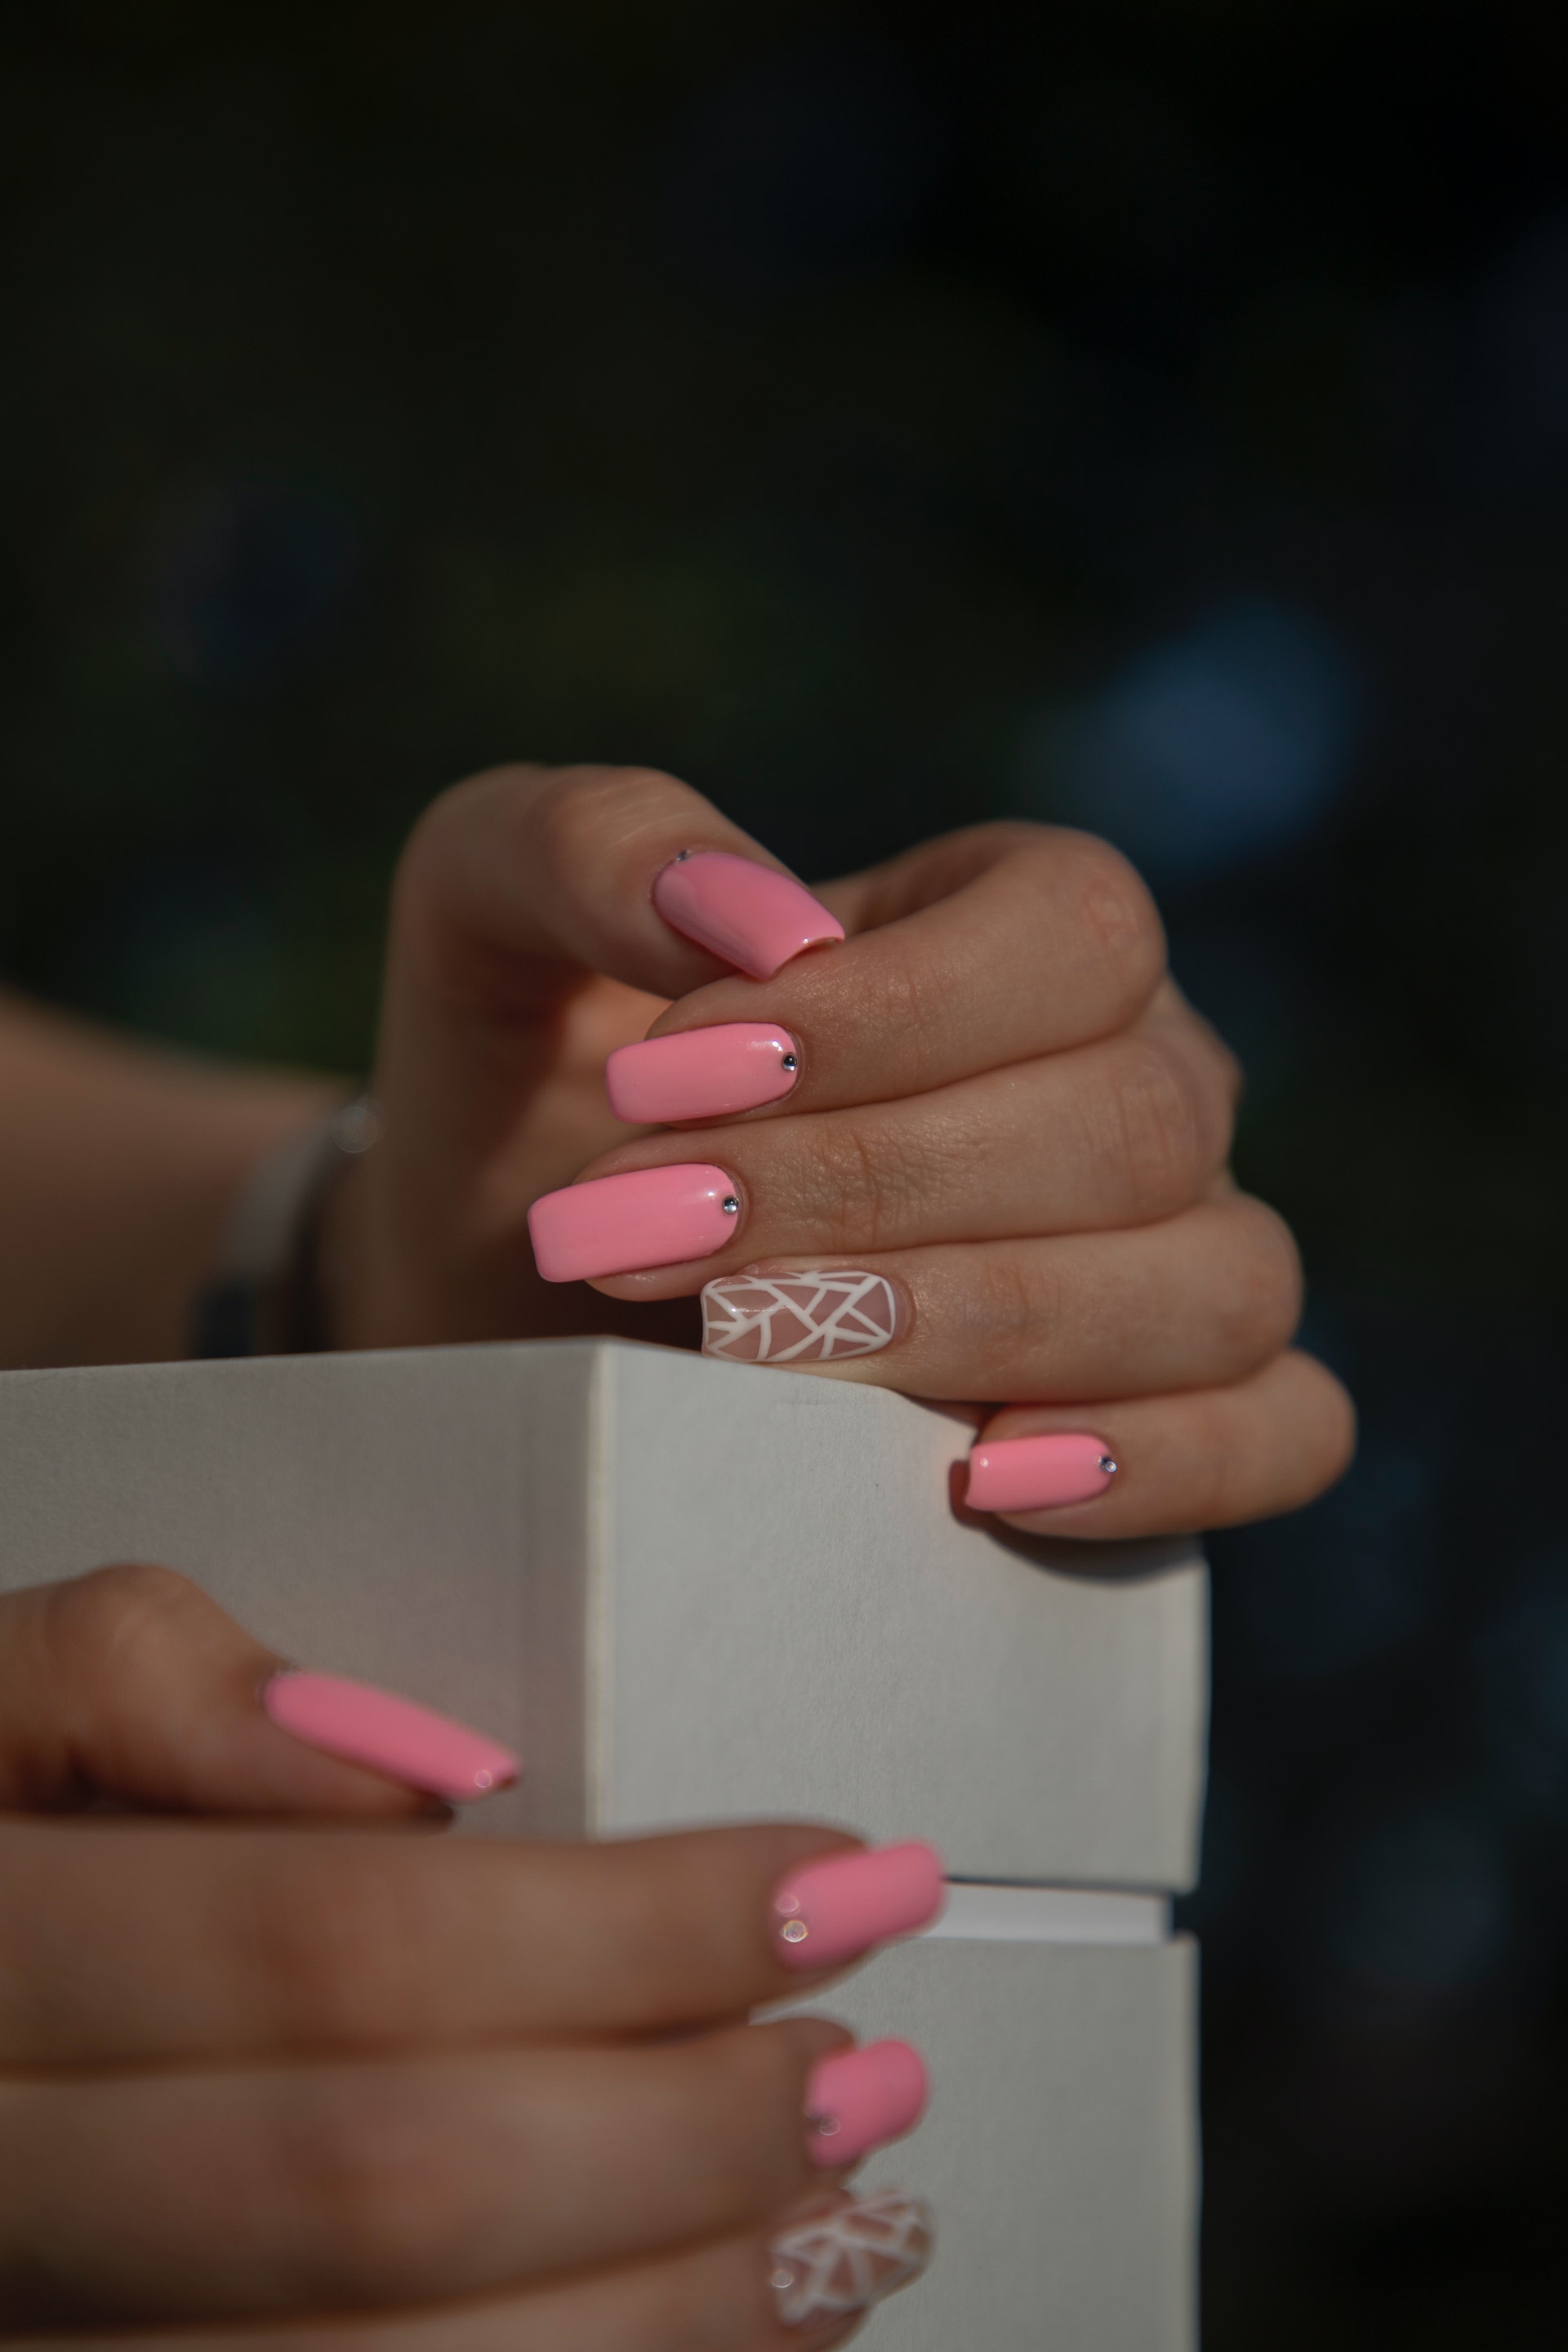 Weibliche Hände mit rosa Nagellack verziert | Quelle: Pexels